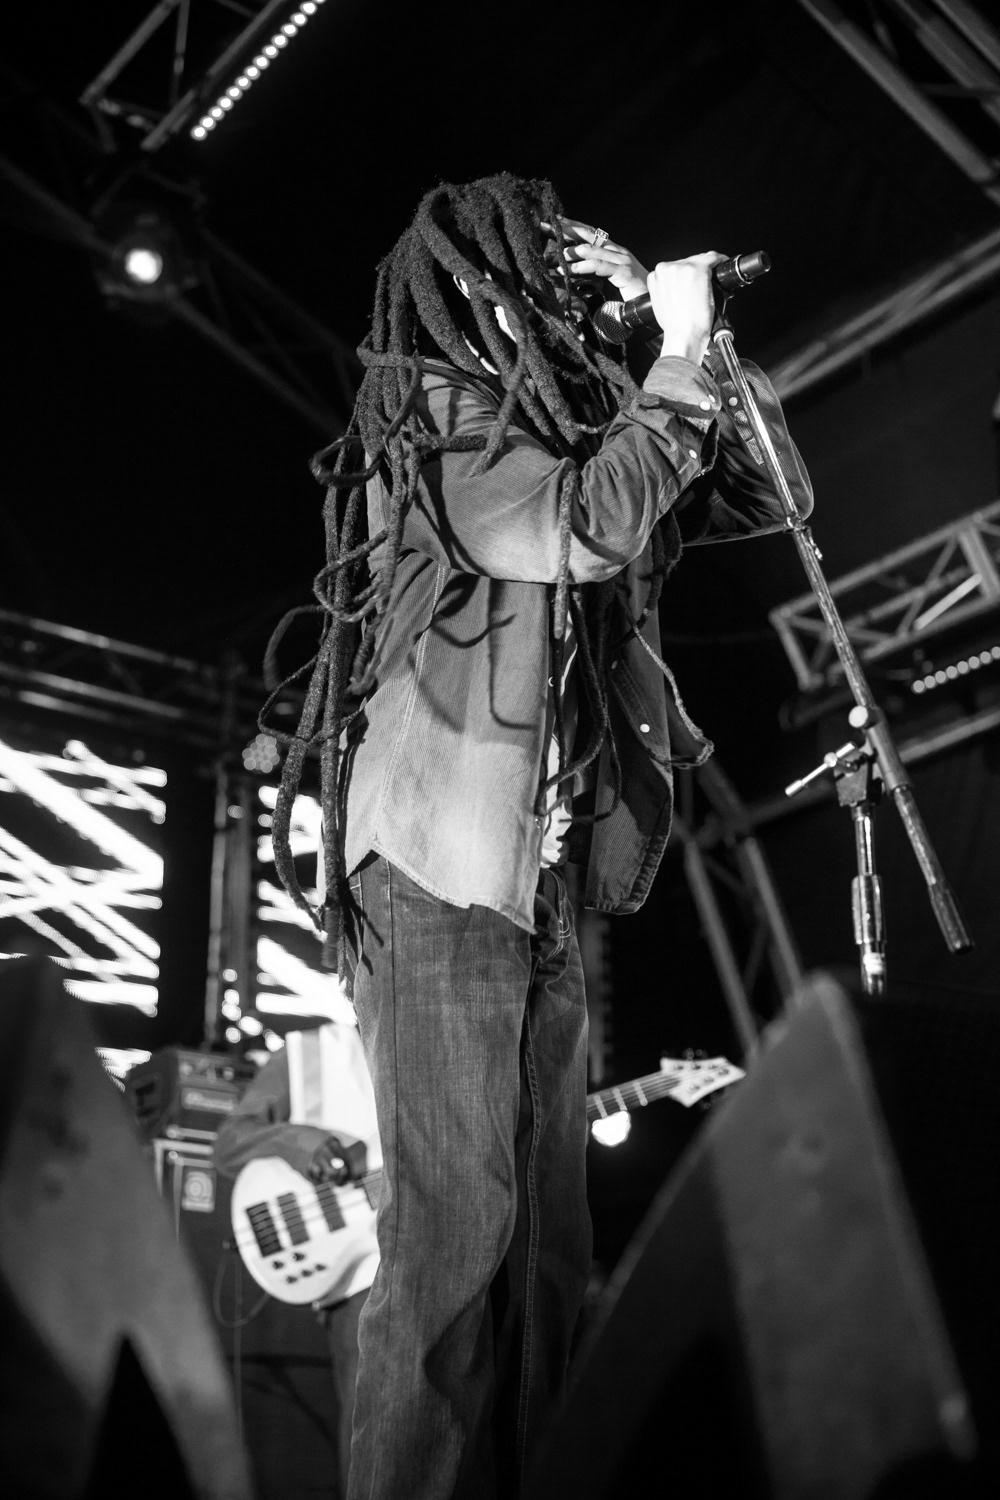 julian marley marley Bob Marley Tuff Gong ghetto youths jamaica reggae woodford festival woodford Australia